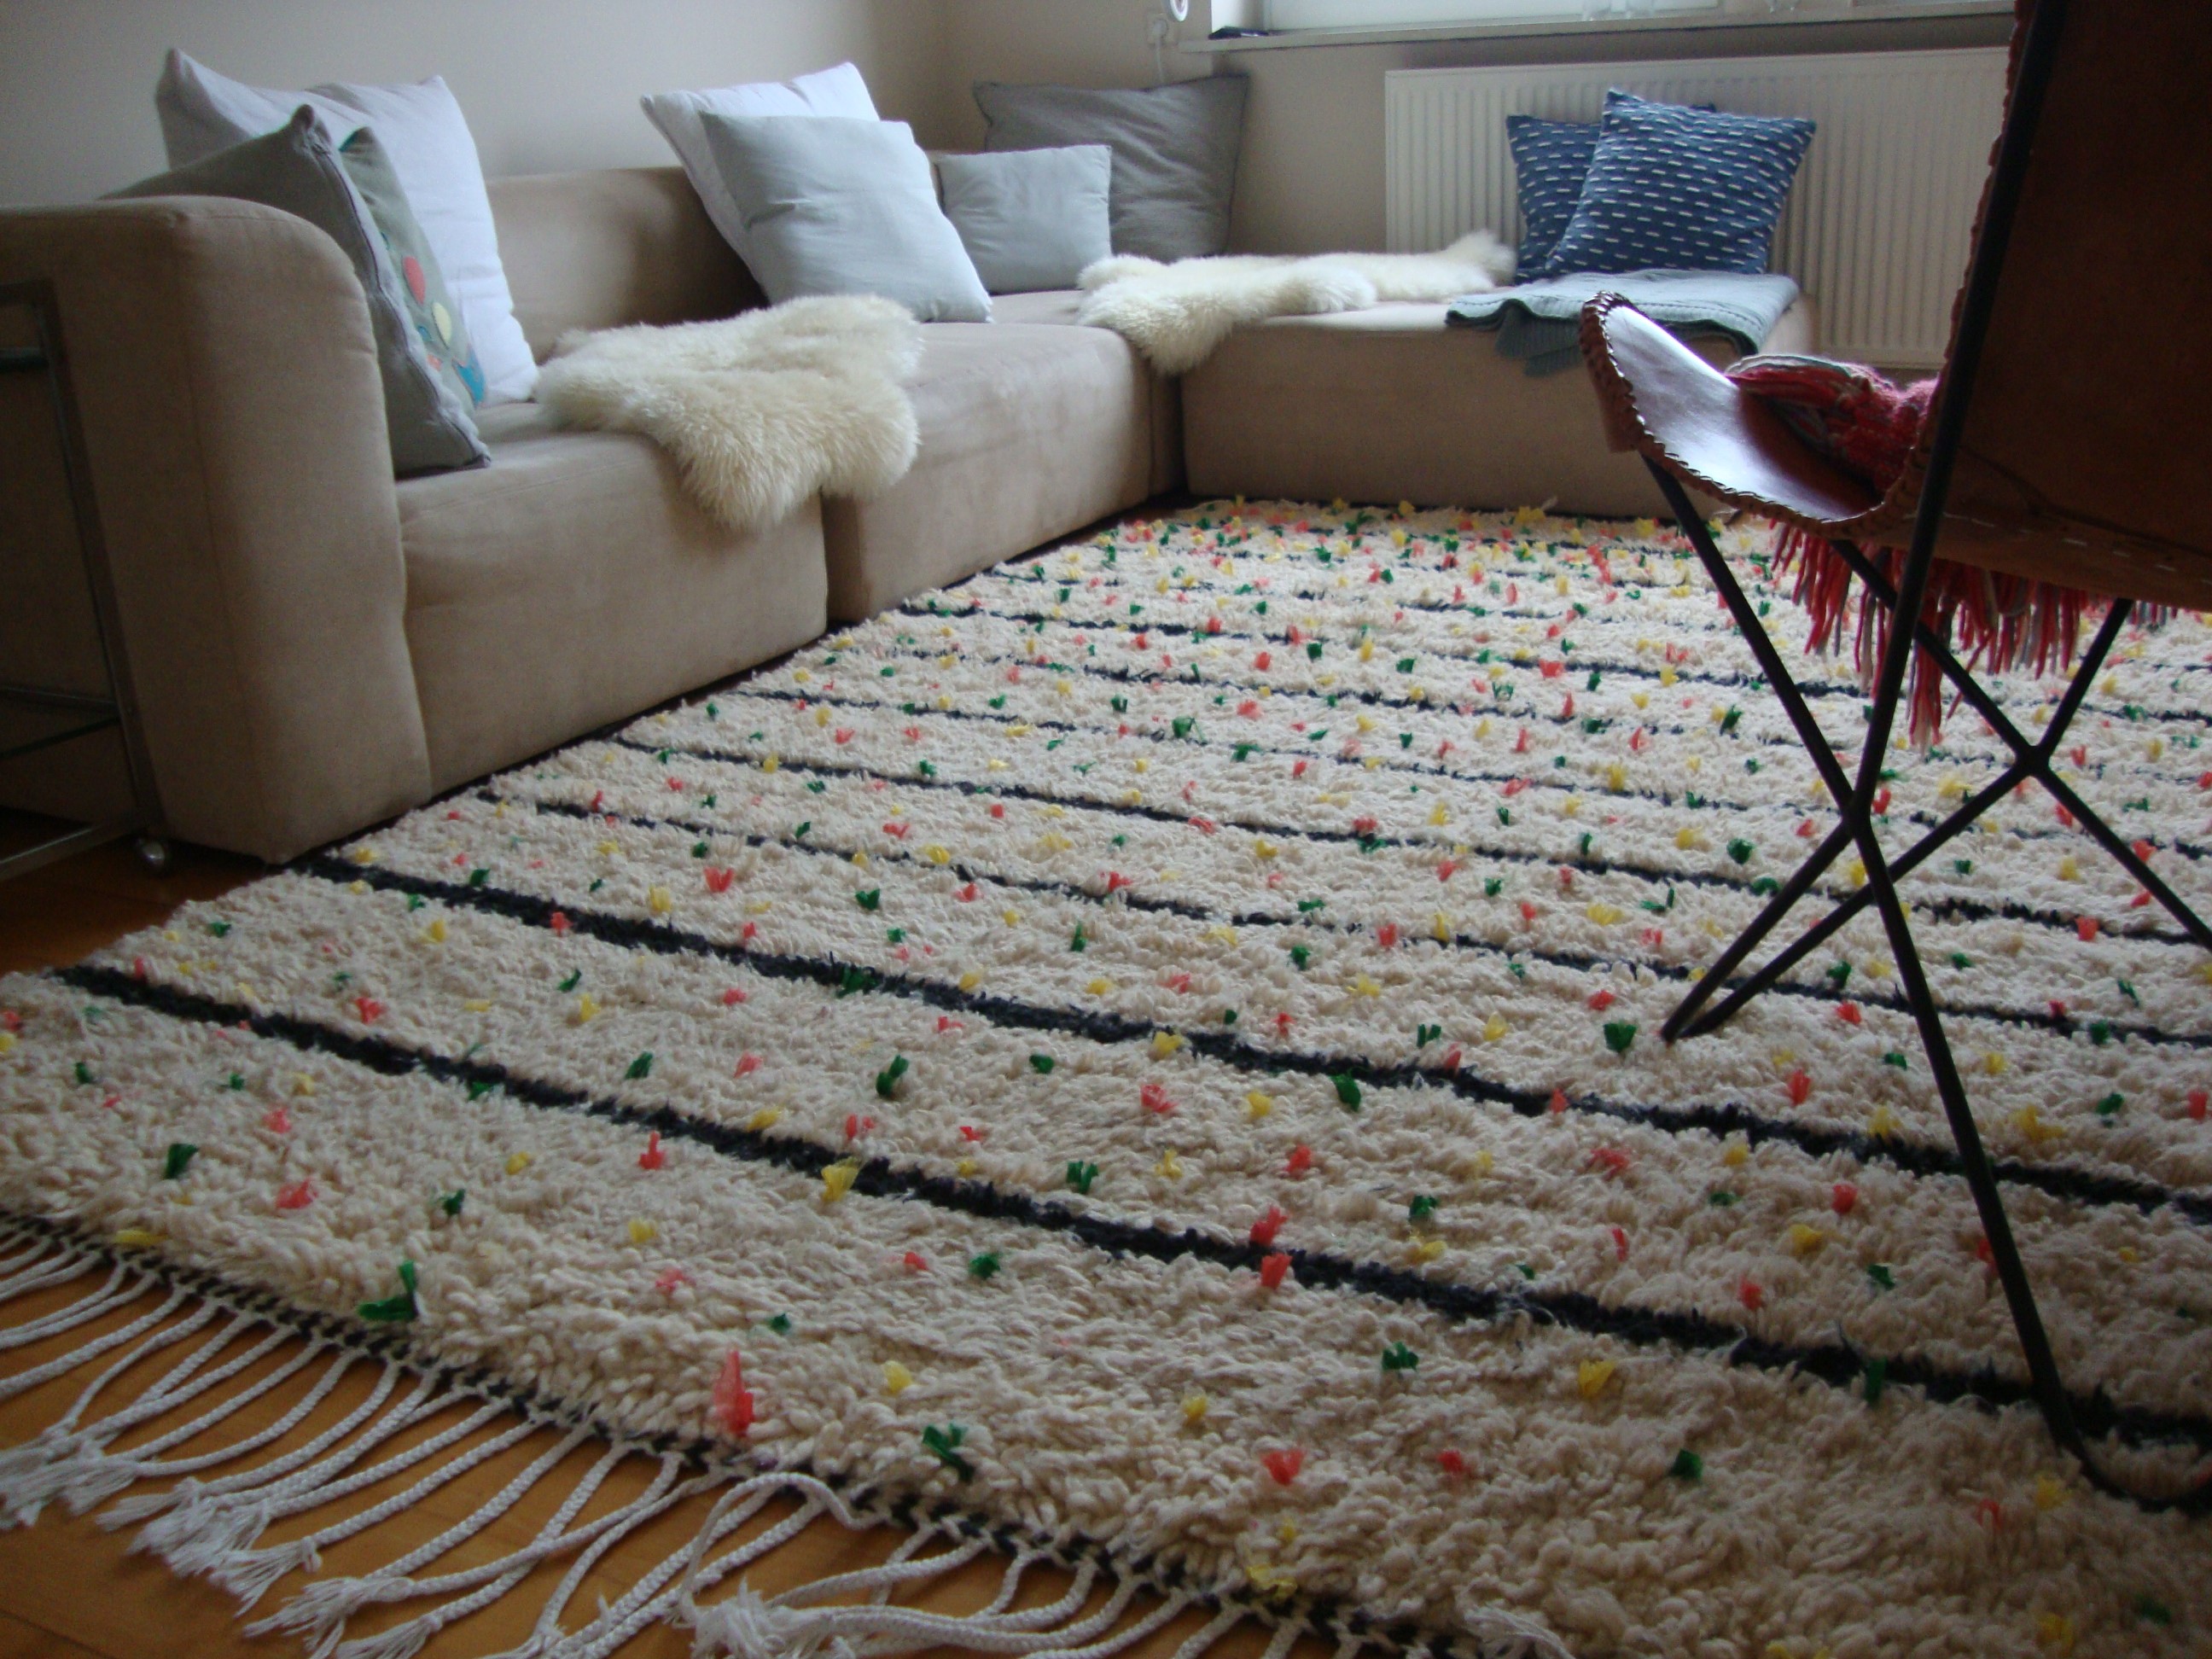 Même si le tapis berbère peut être formidable, il y a certains inconvénients que vous devriez connaître.